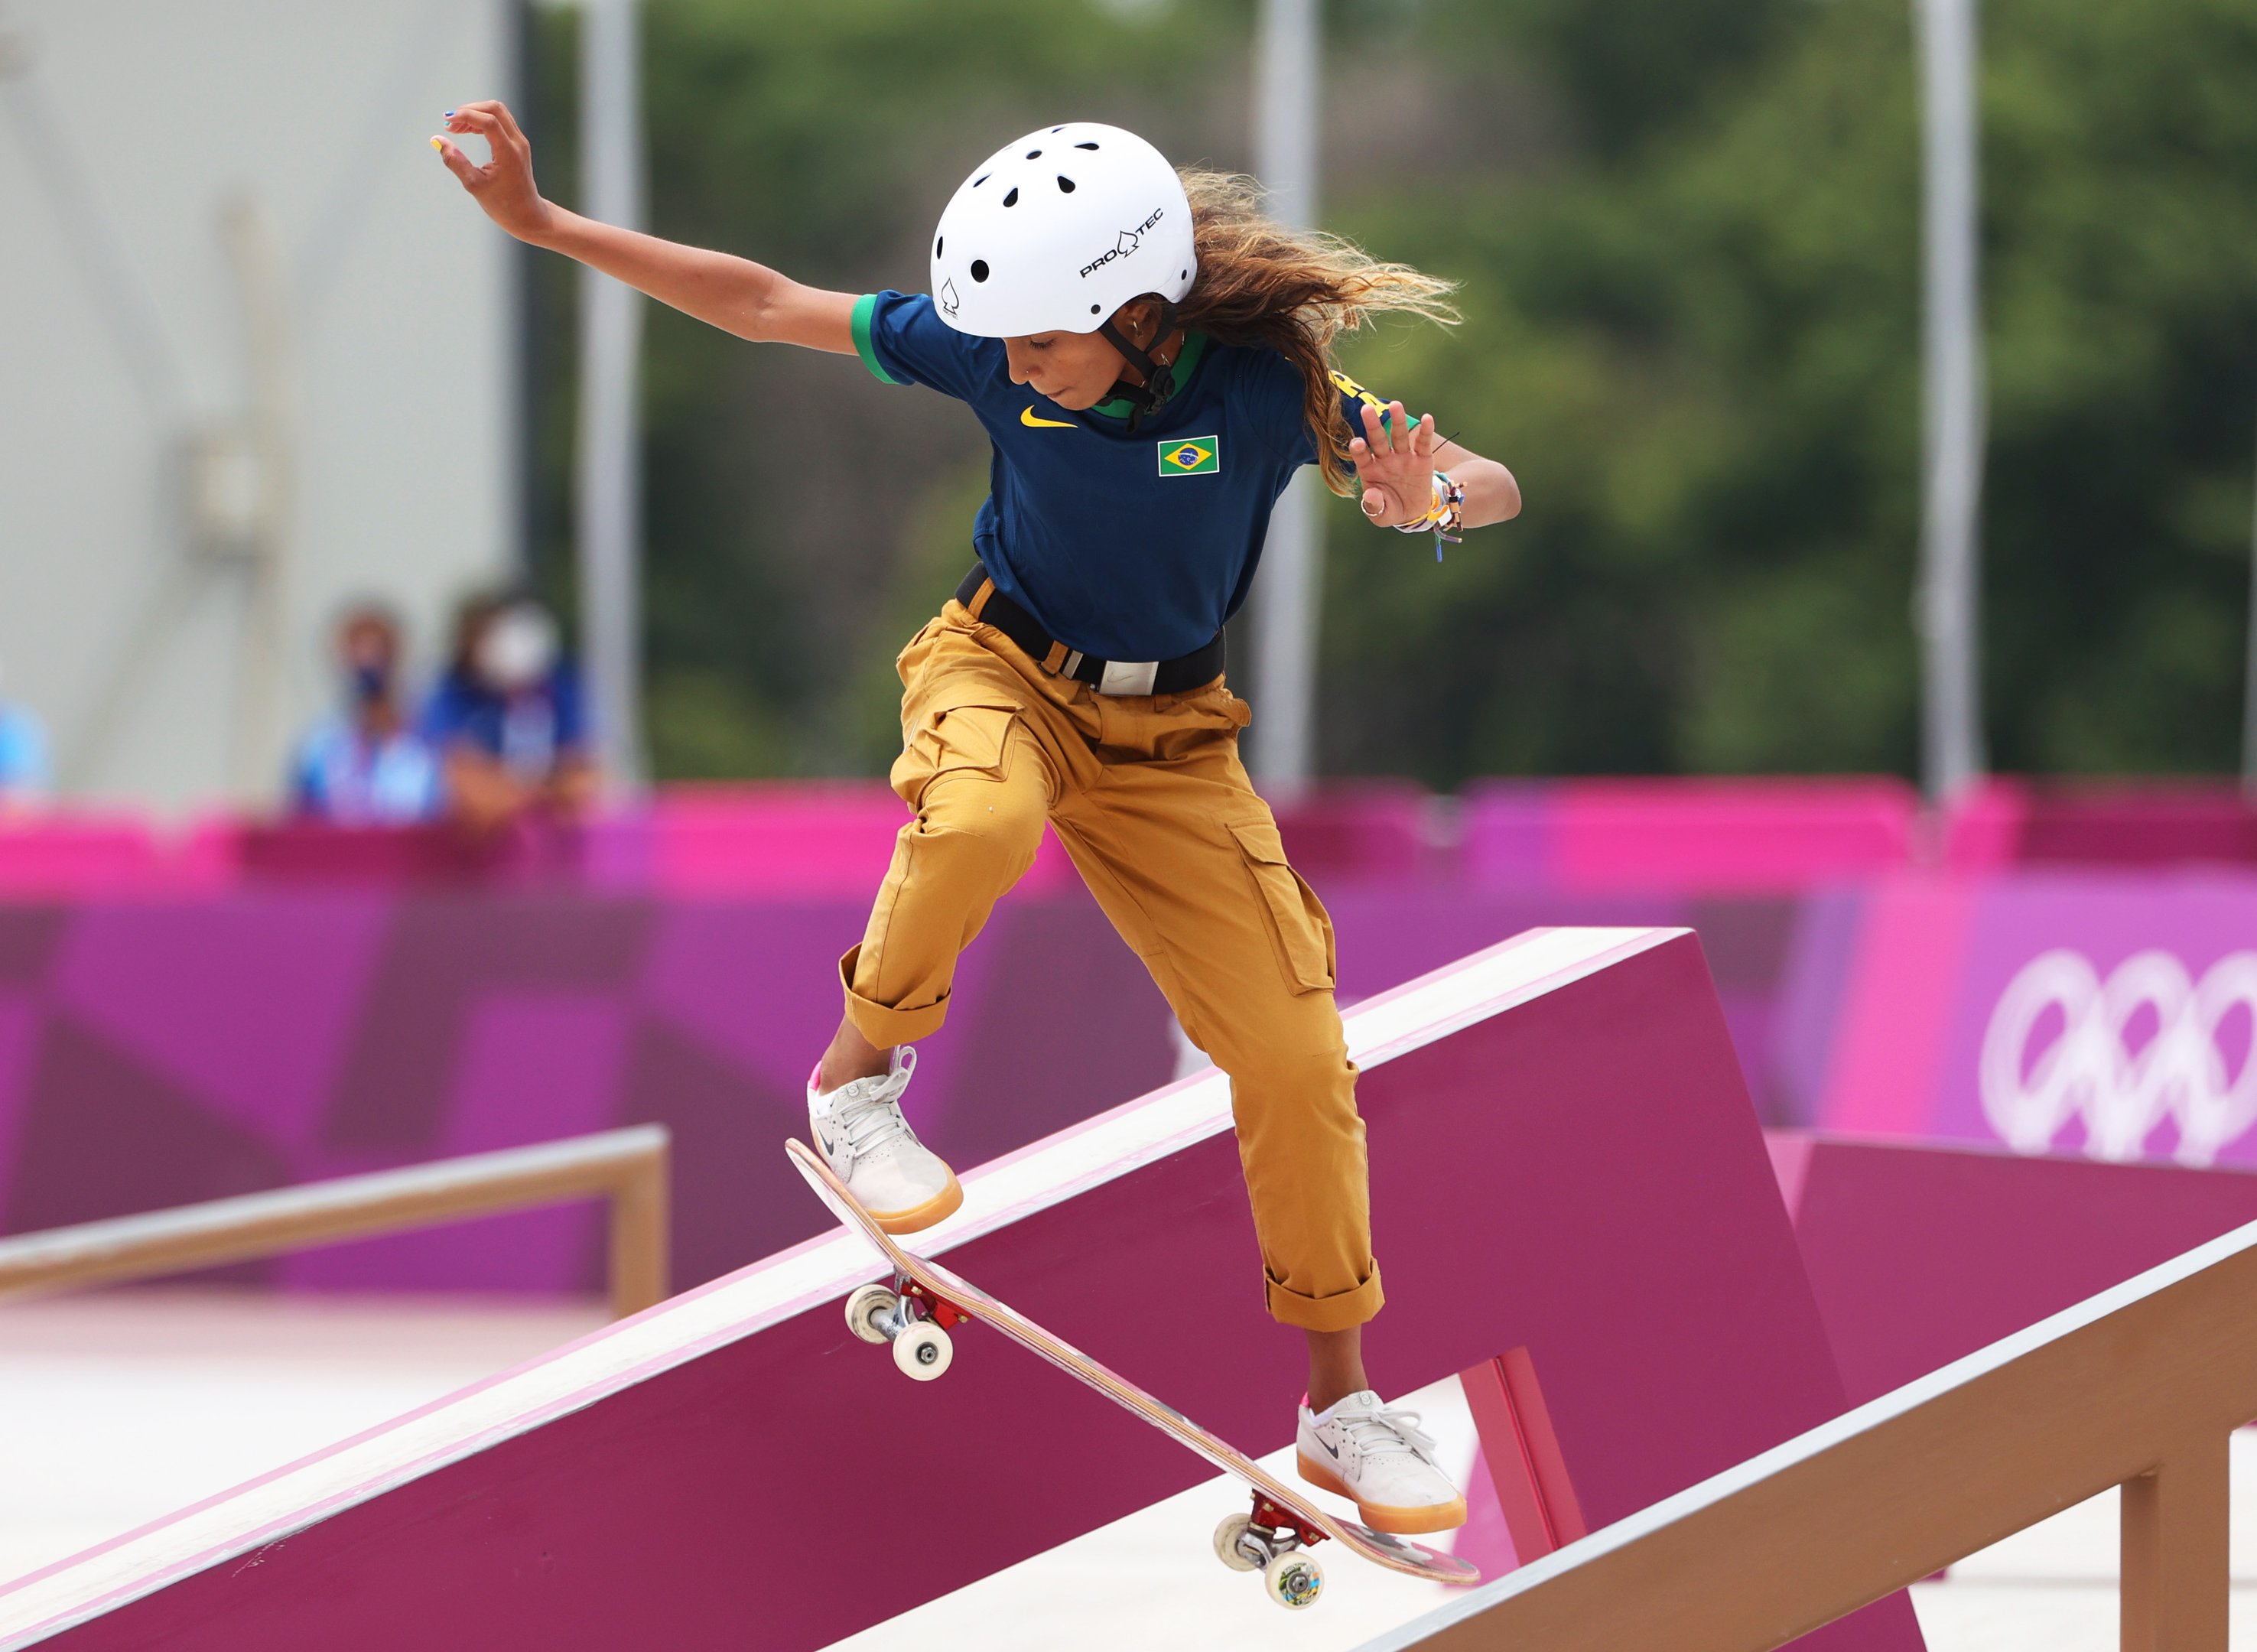 Rayssa Leal, do Time Brasil, compete durante a Eliminatória 4 da modalidade Street Feminina no terceiro dia dos Jogos Olímpicos de Tóquio 2020 no Ariake Urban Sports Park em 26 de julho de 2021 em Tóquio, Japão.